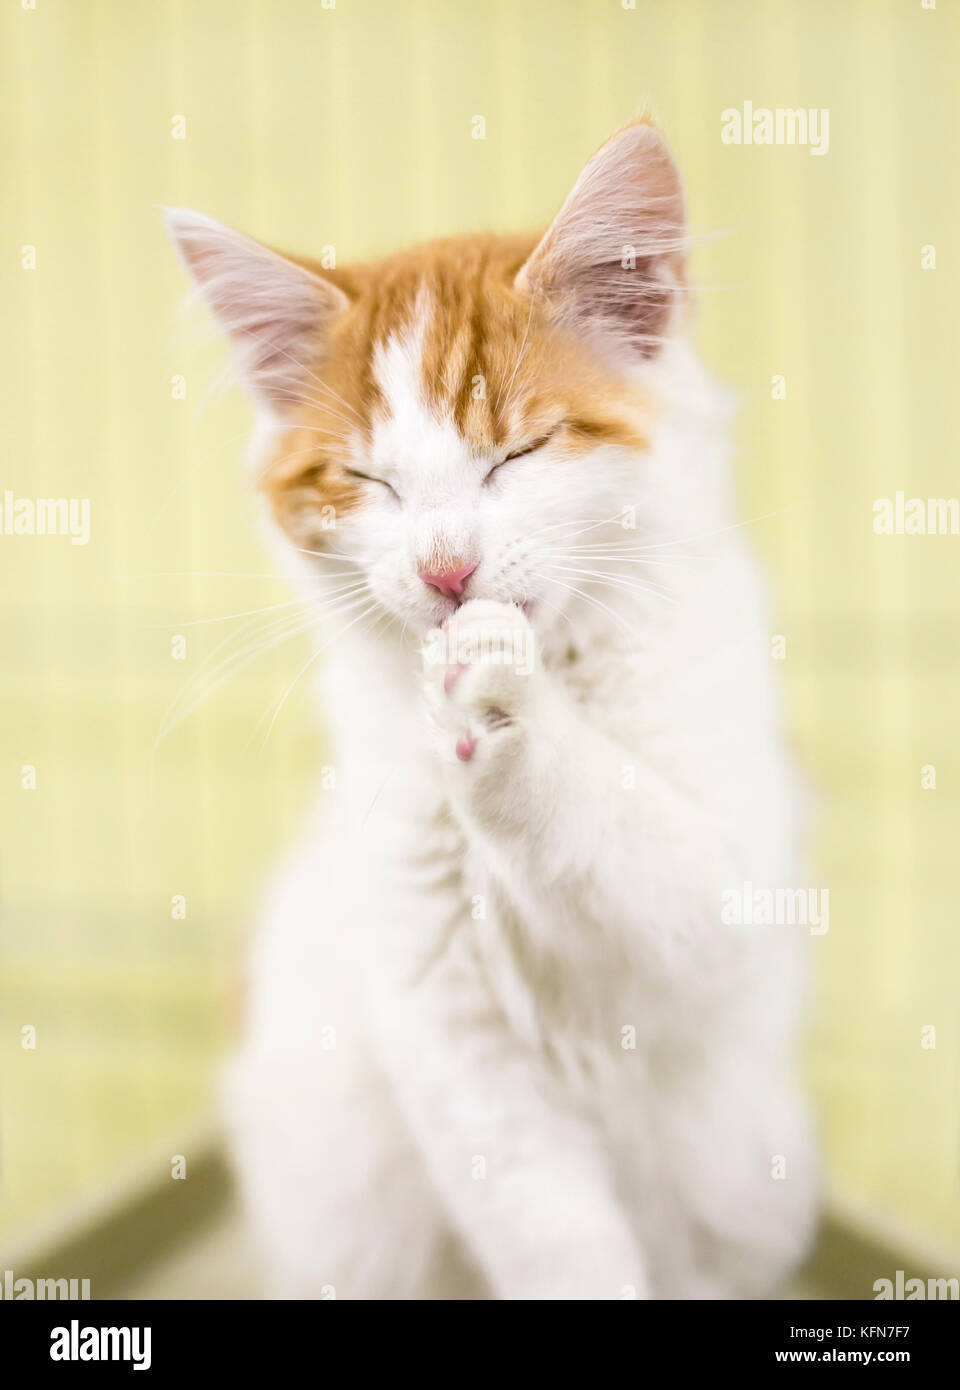 Eine weiße Katze mit orange tabbyzeichnung selbst pflegen Stockfoto